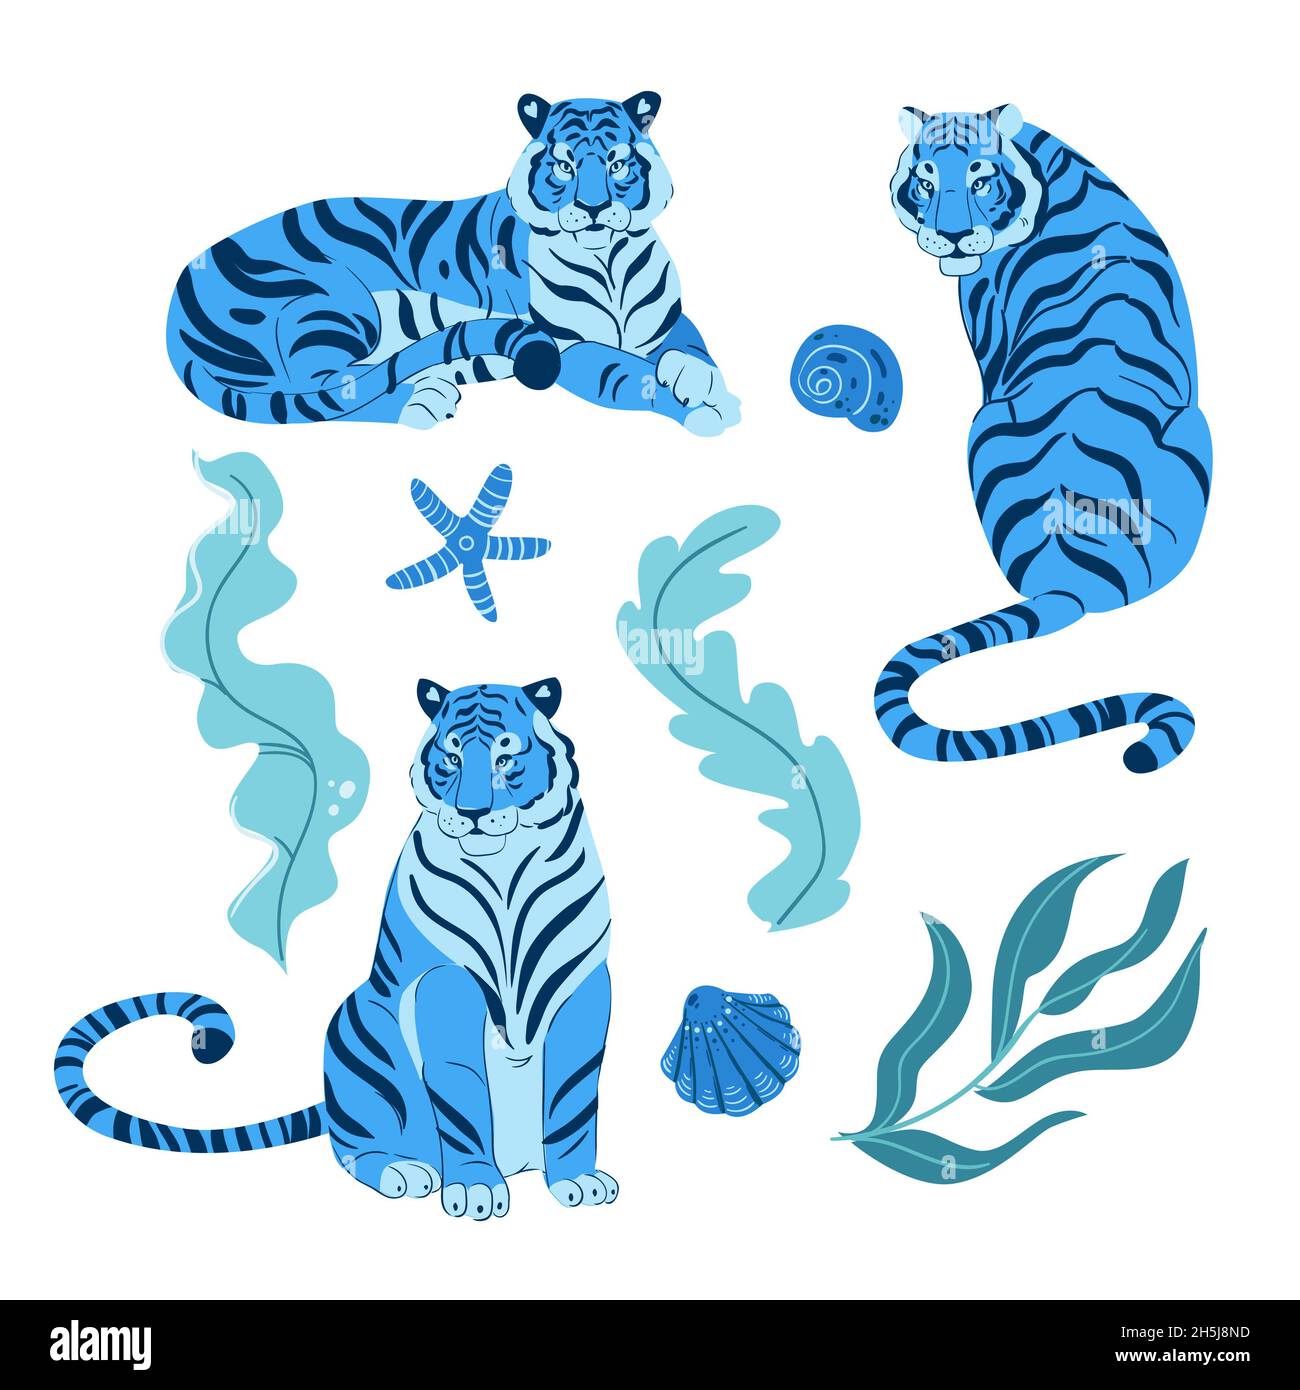 Ensemble d'adulte grand tigre bleu faune et thème dessin animé animal dessin plat illustration isolée sur fond blanc Banque D'Images